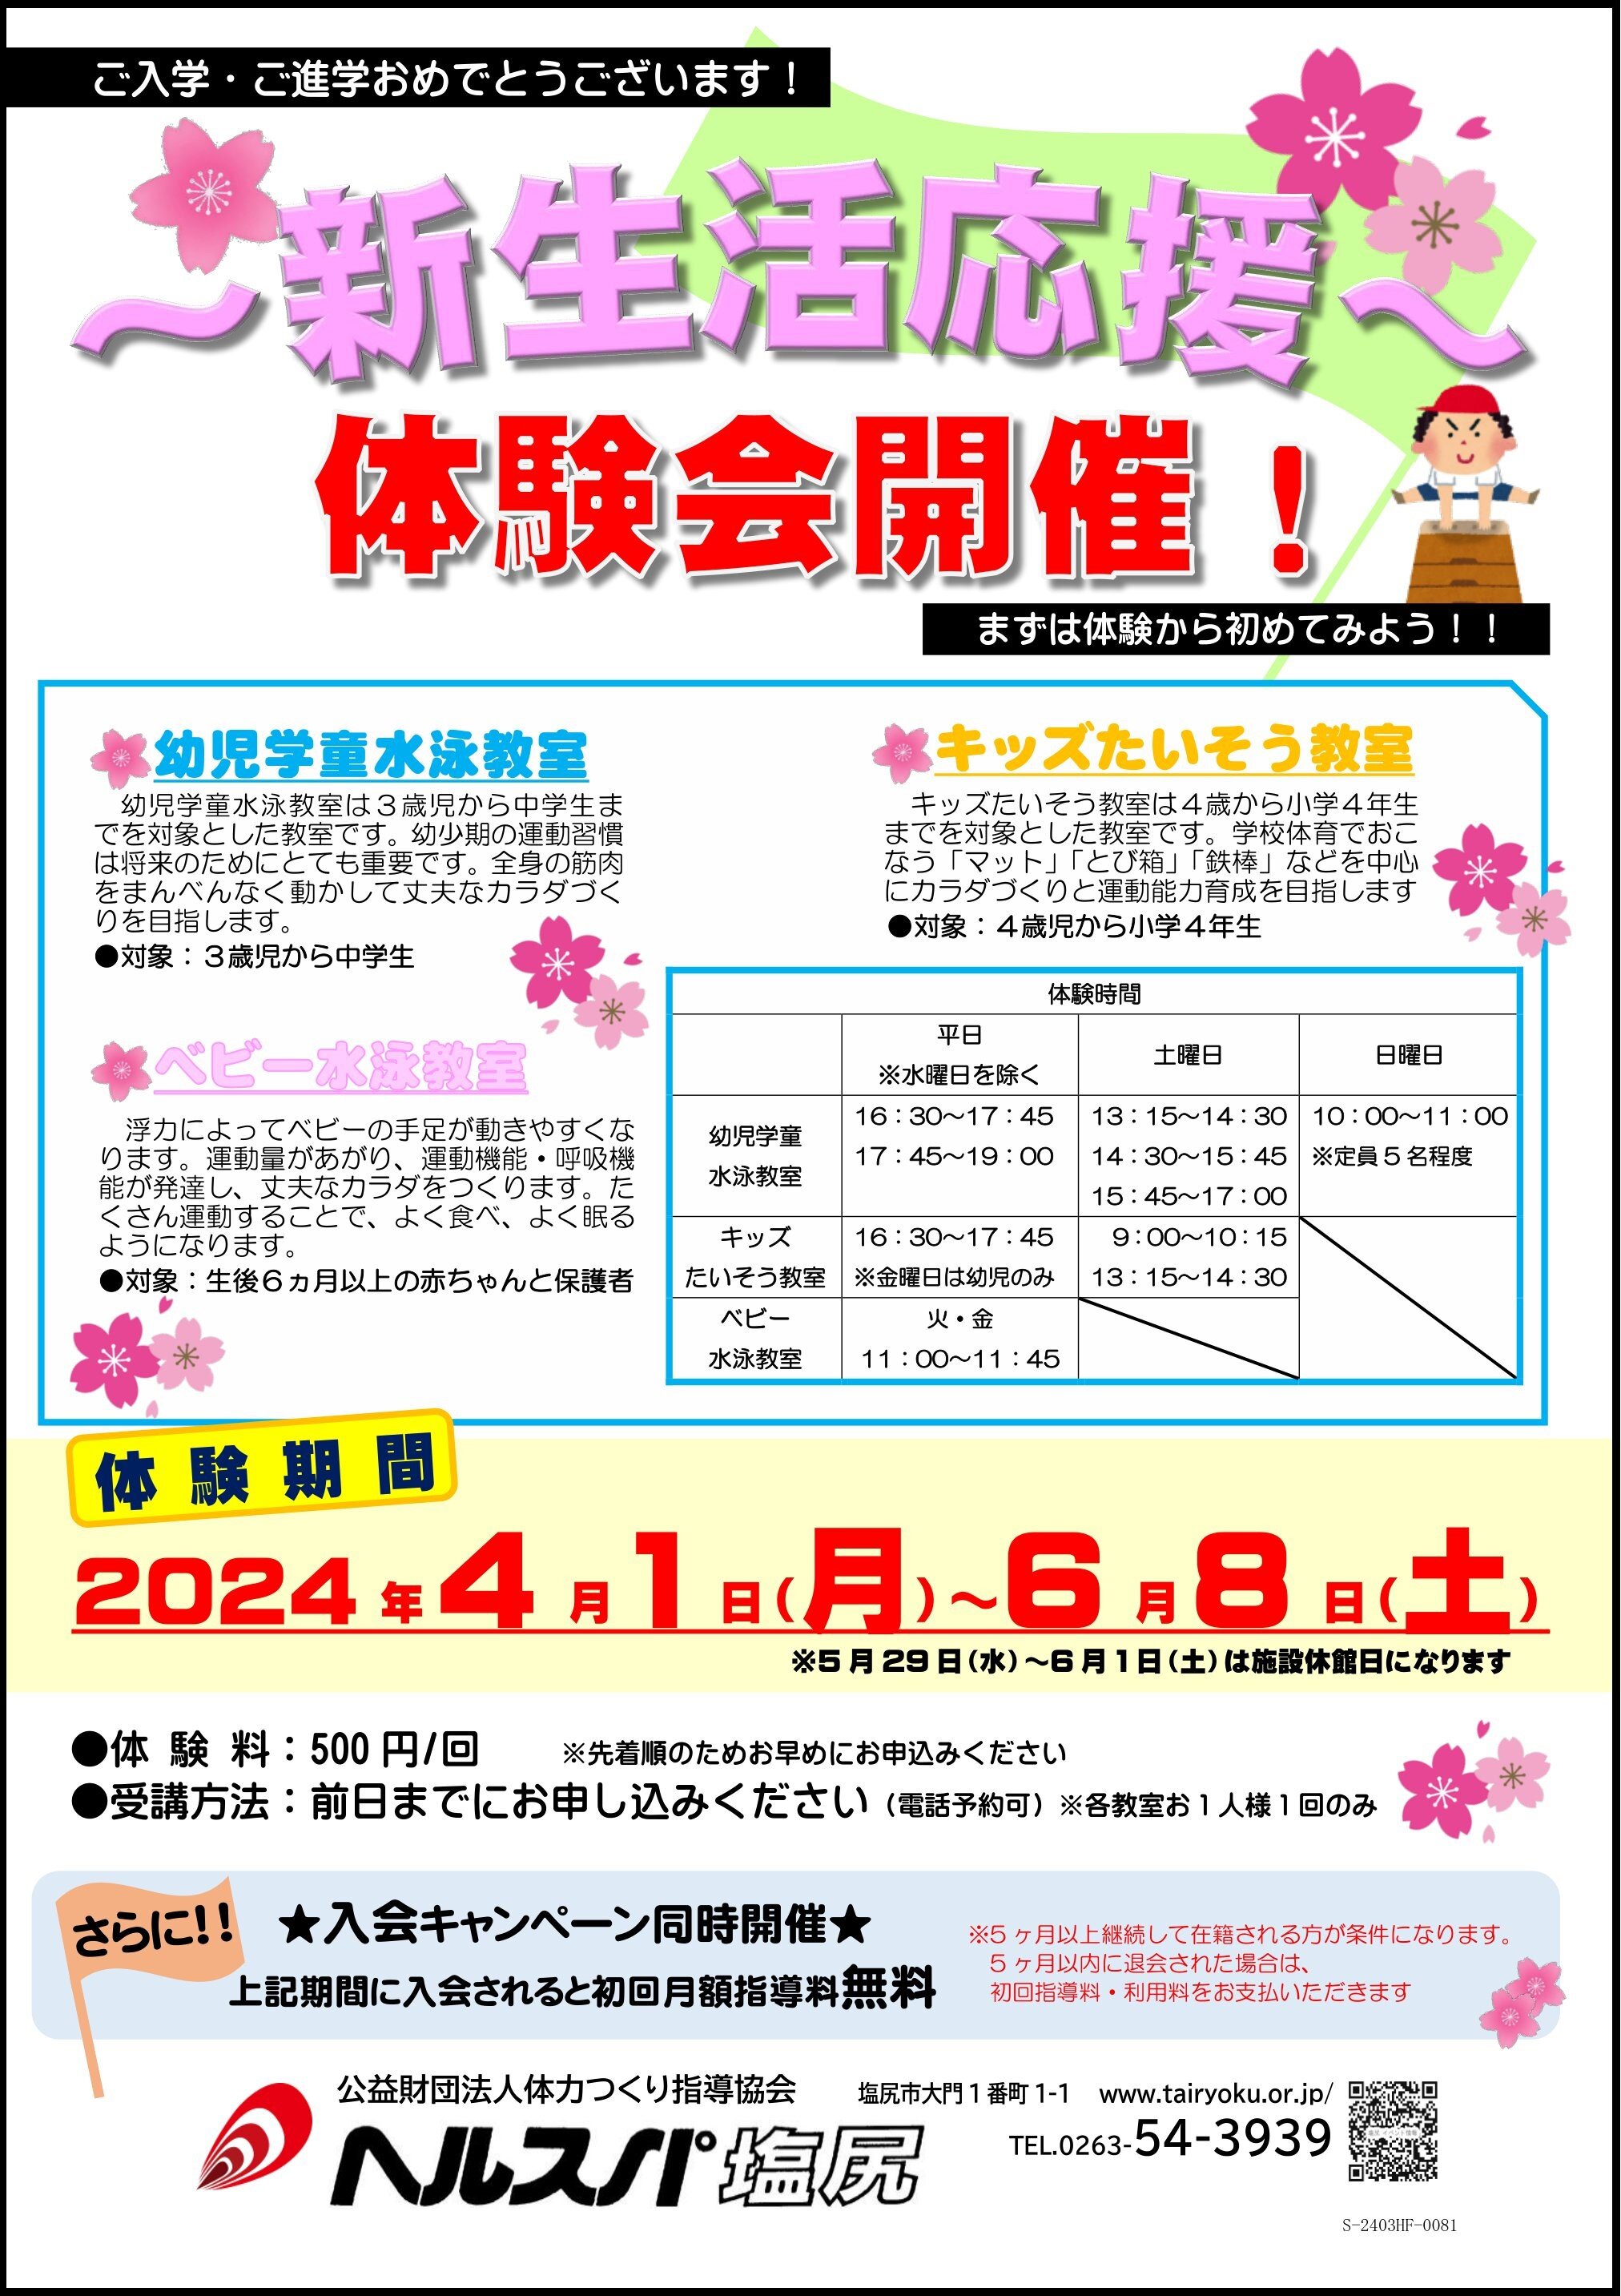 4/1-6/8　500円体験会・新生活応援入会キャンペーン